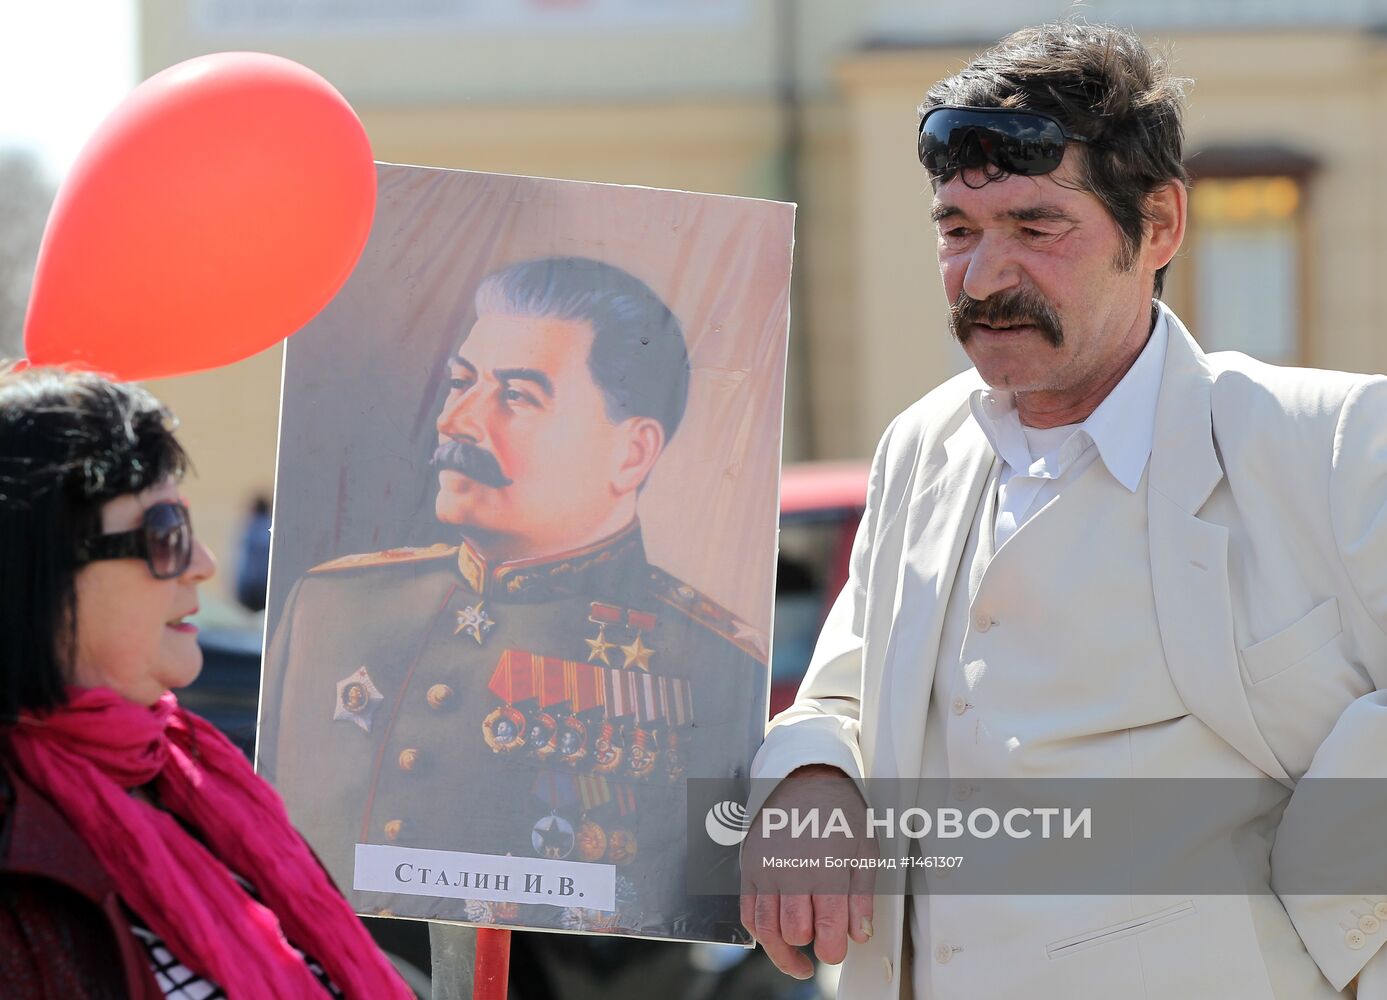 Первомайские демонстрации в Казани